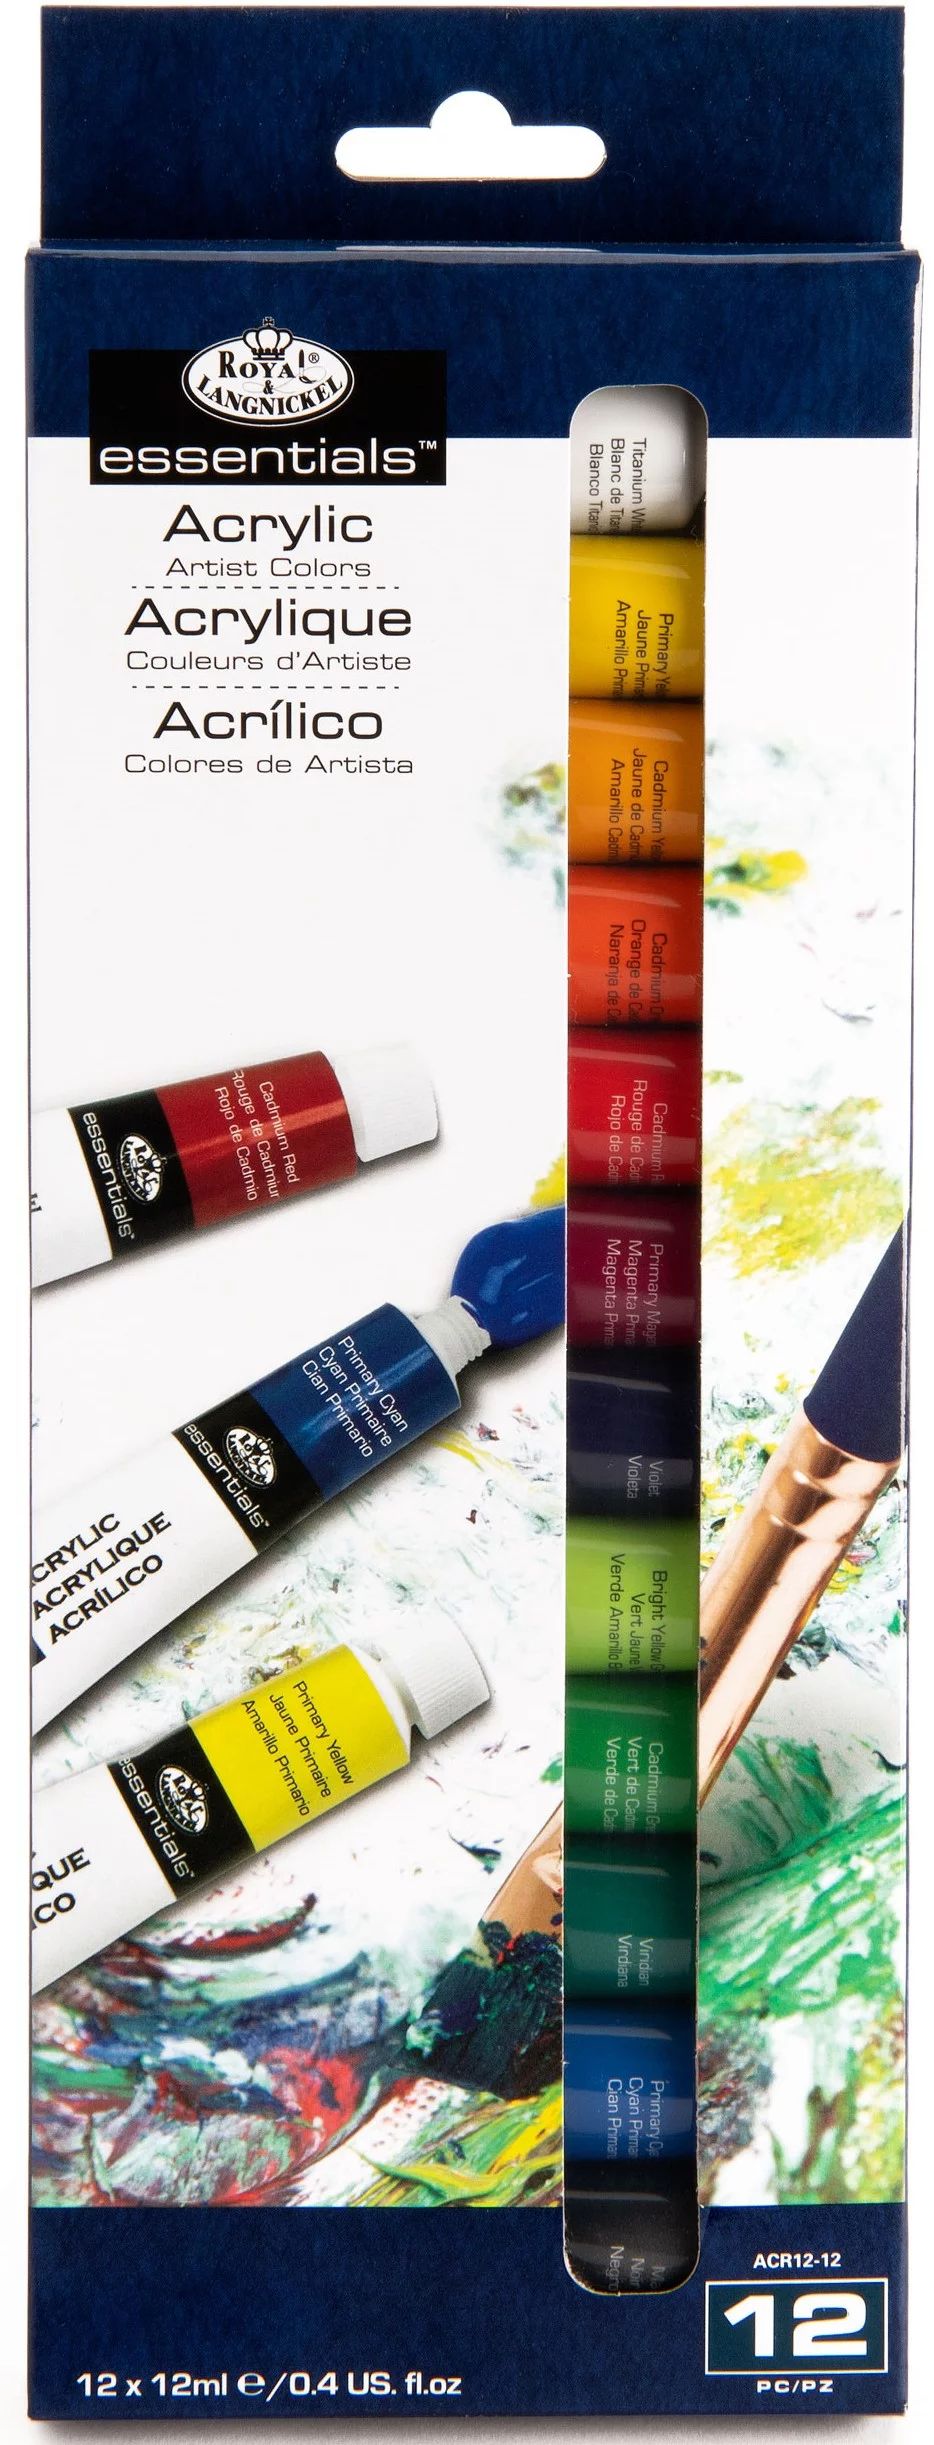 Royal & Langnickel - Essentials 12ml Acrylic Paint Set, 12 Colors - Walmart.com | Walmart (US)